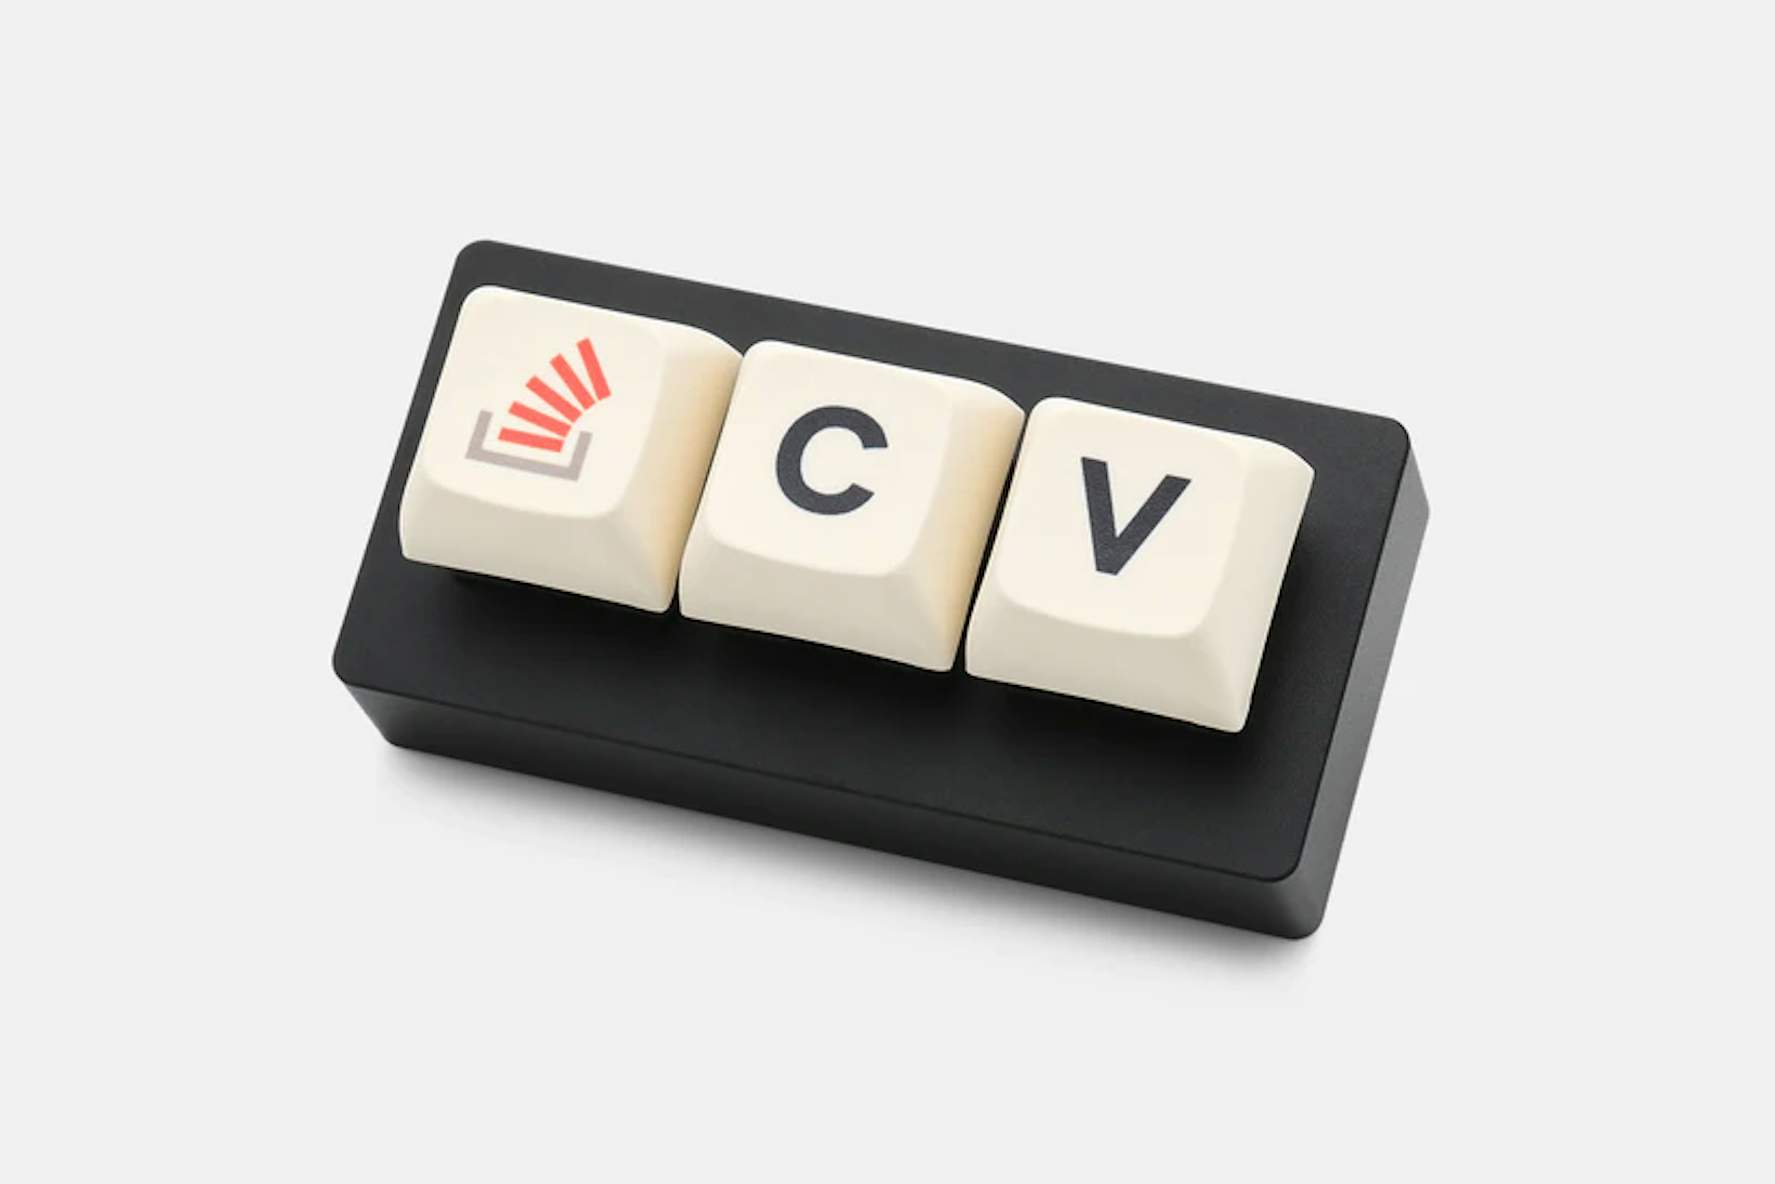 Række ud foretrække Incubus Smart tastatur har kun tre taster | Komputer.dk